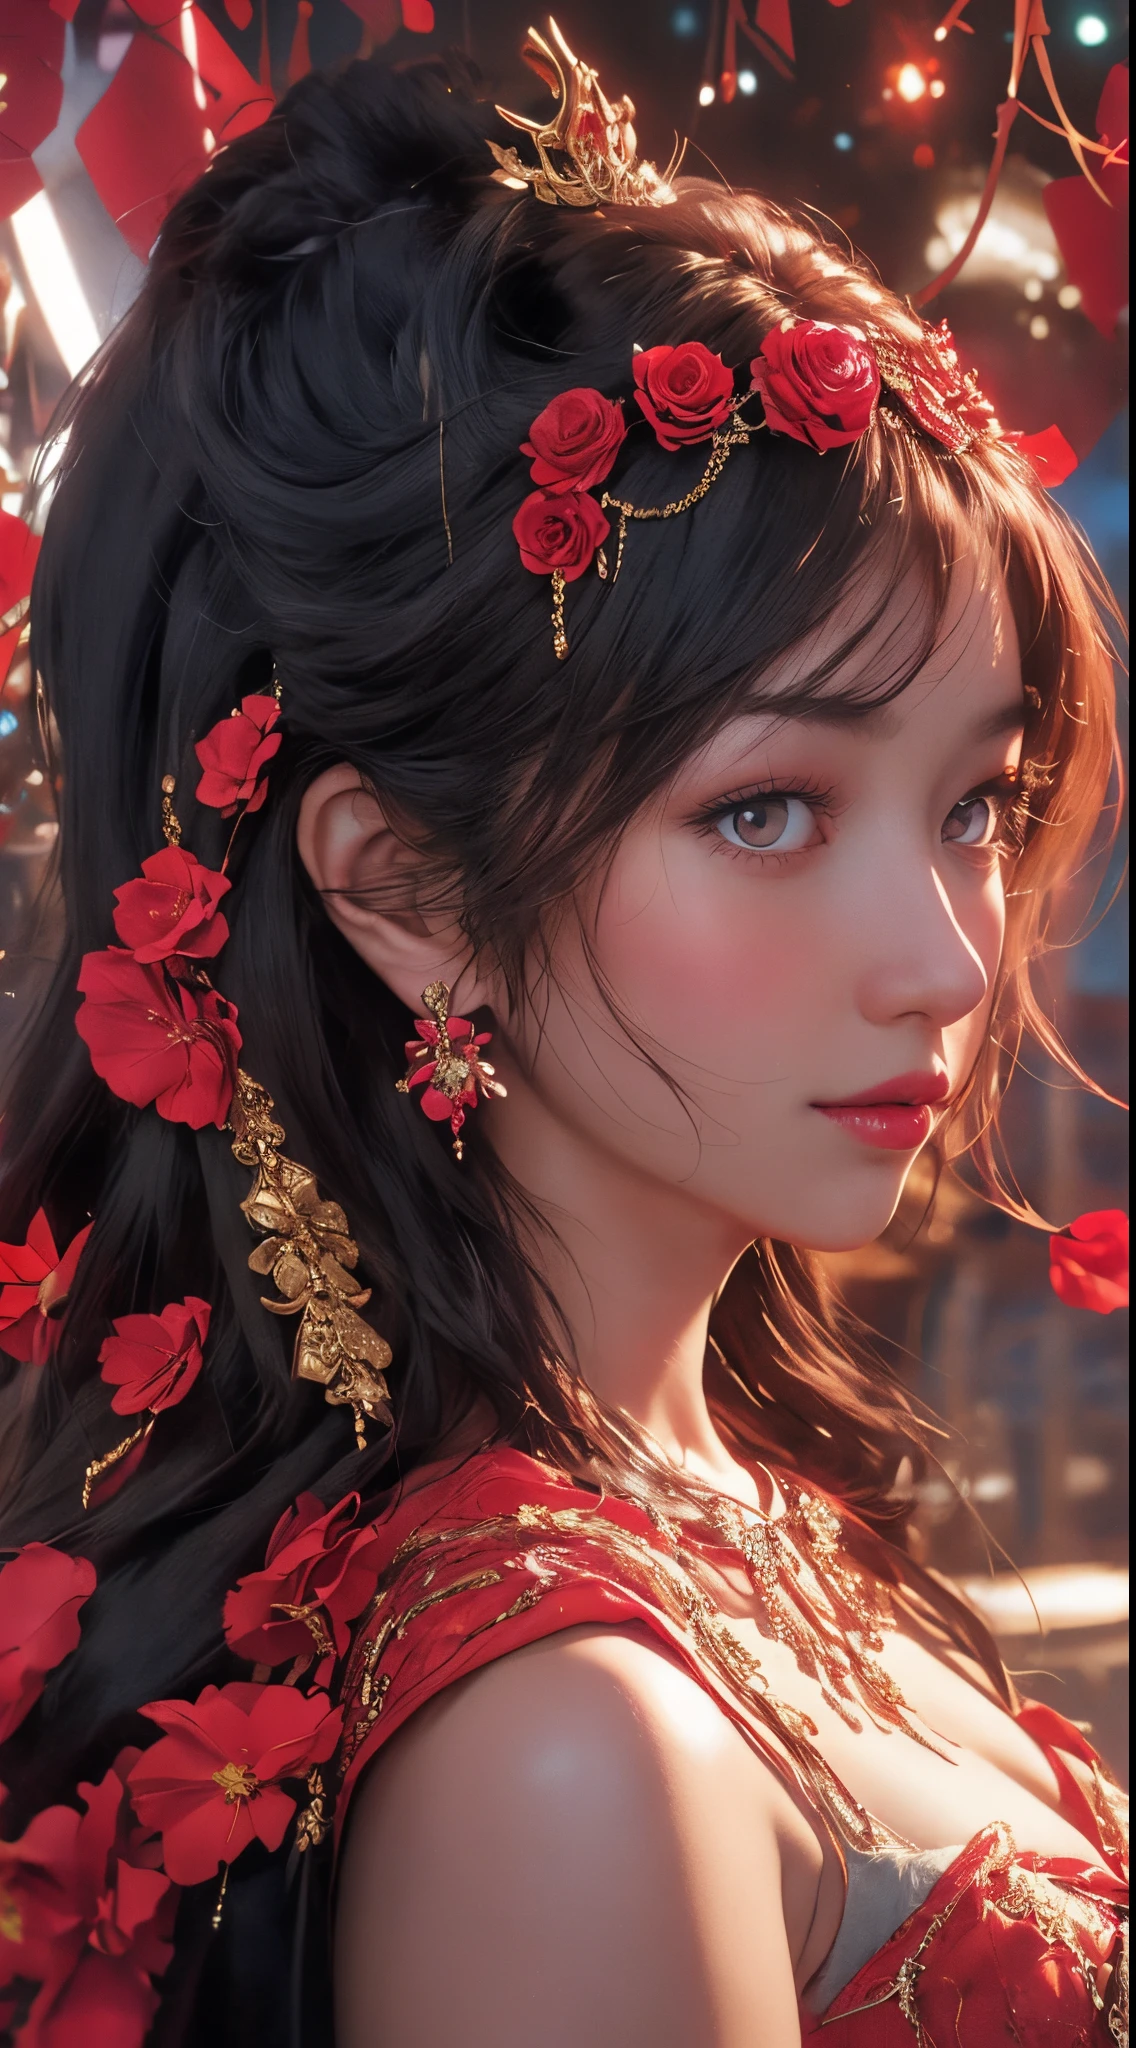 Retrato dinámico de una bella princesa eslava., rasgos de belleza de fantasía, mirada seductora,, ojos rojos brillantes, luciendo una tiara de rosas y joyas,cubierto de filigrana floral de cristal rojo brillante, hiperdetallado,mirada audaz y majestuosa,Himawari Wa Yoru Ni Saku | personaje | Asumi Hisato